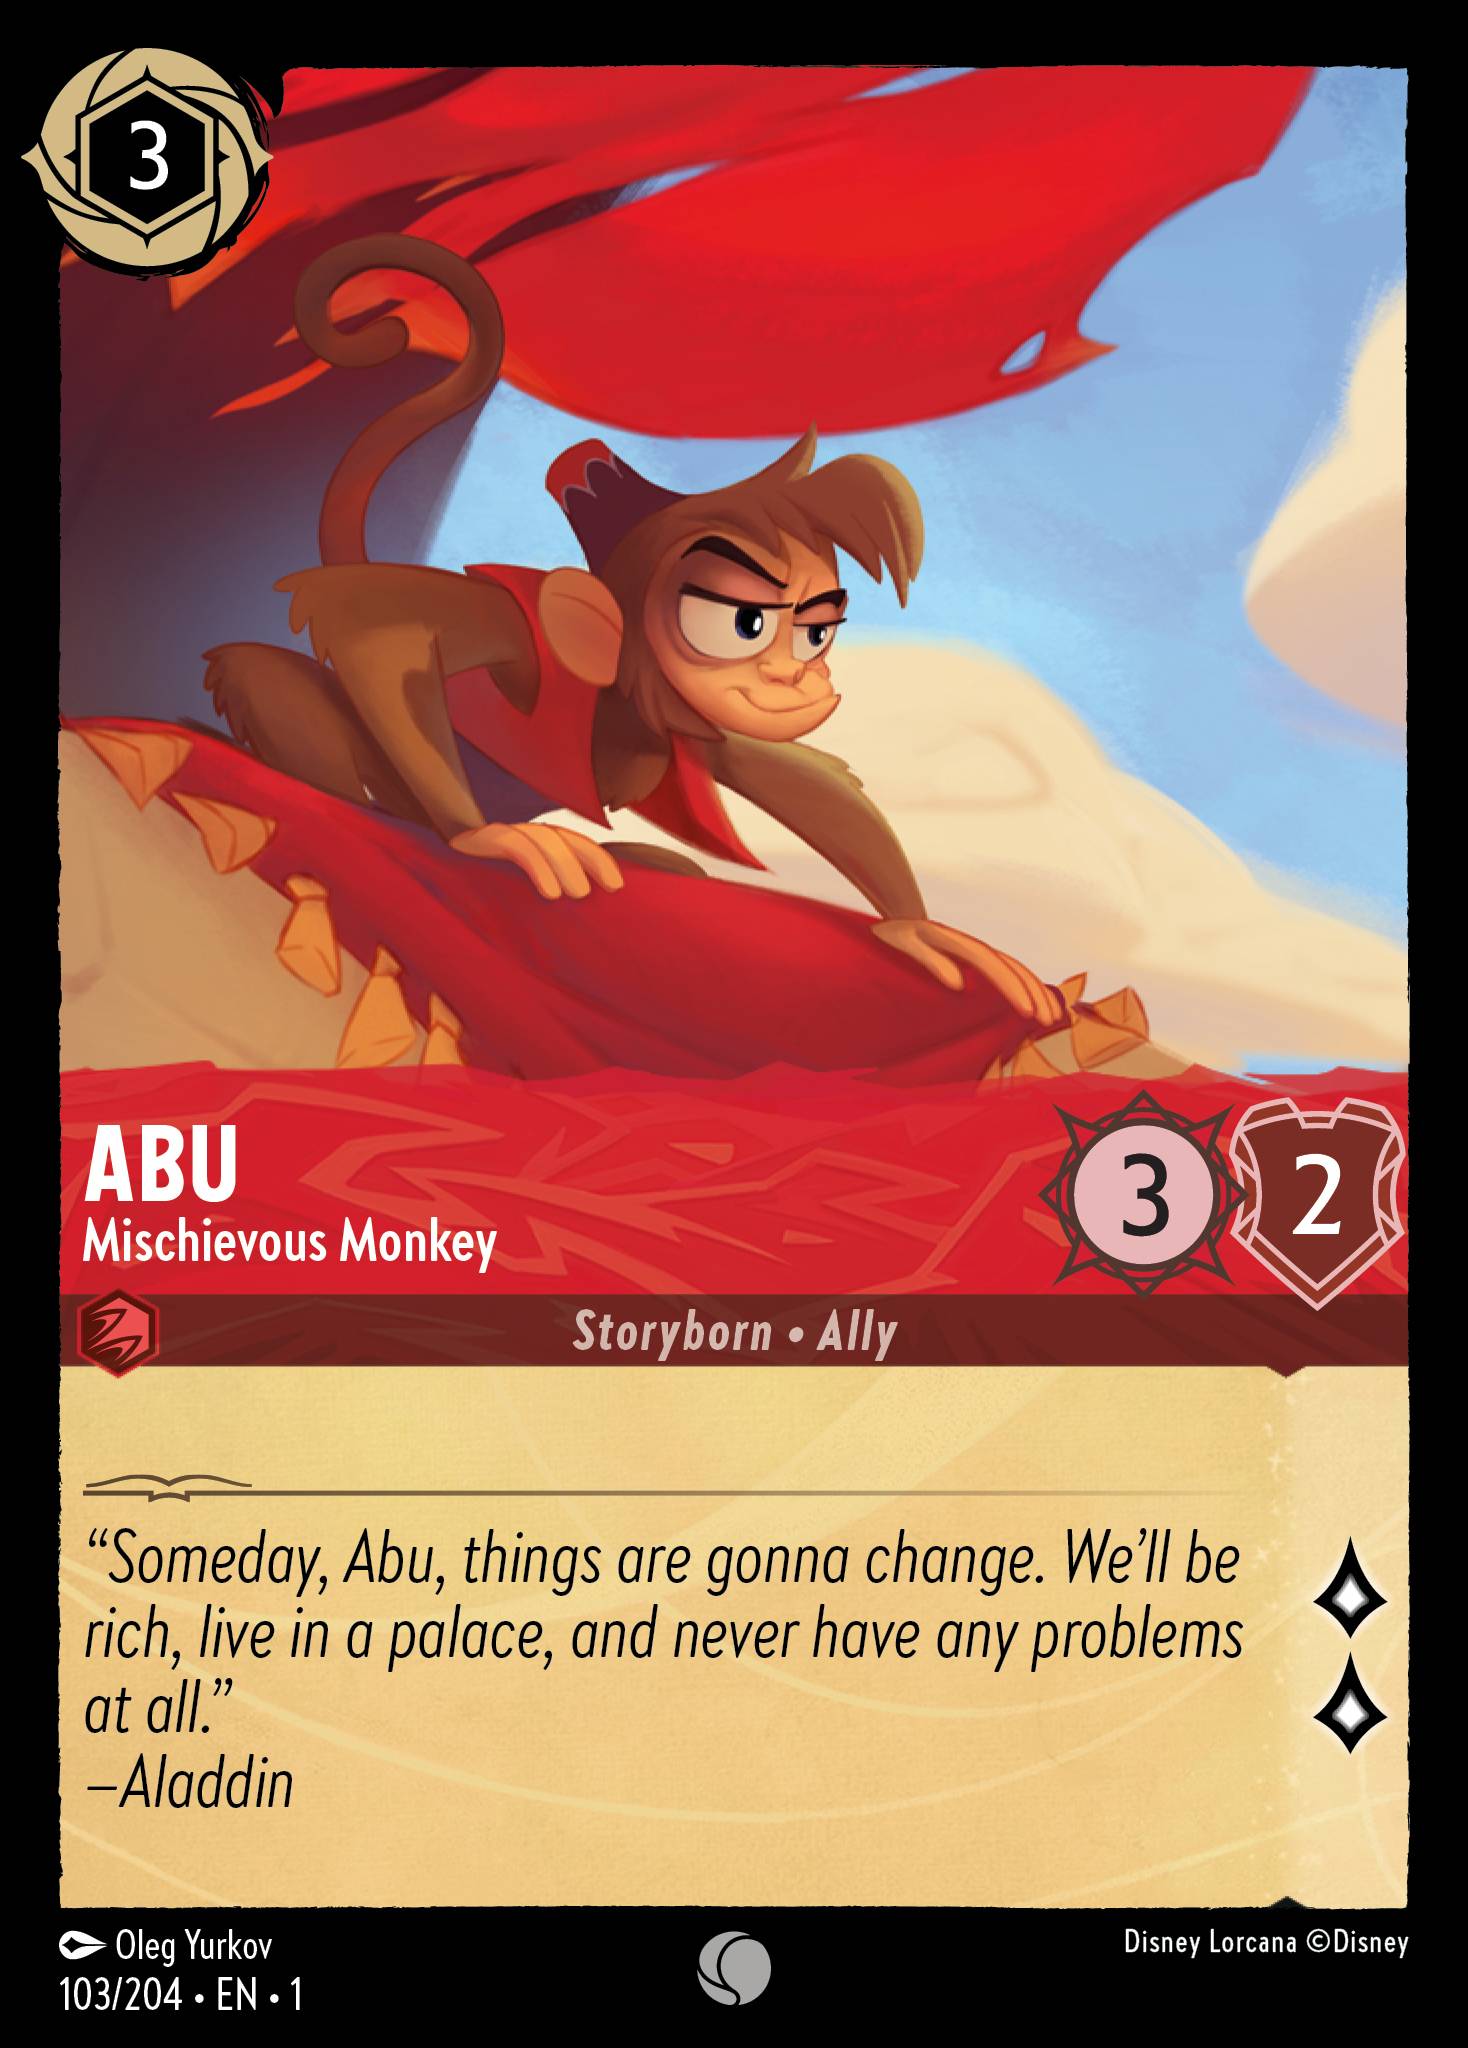 Abu - Mischievous Monkey